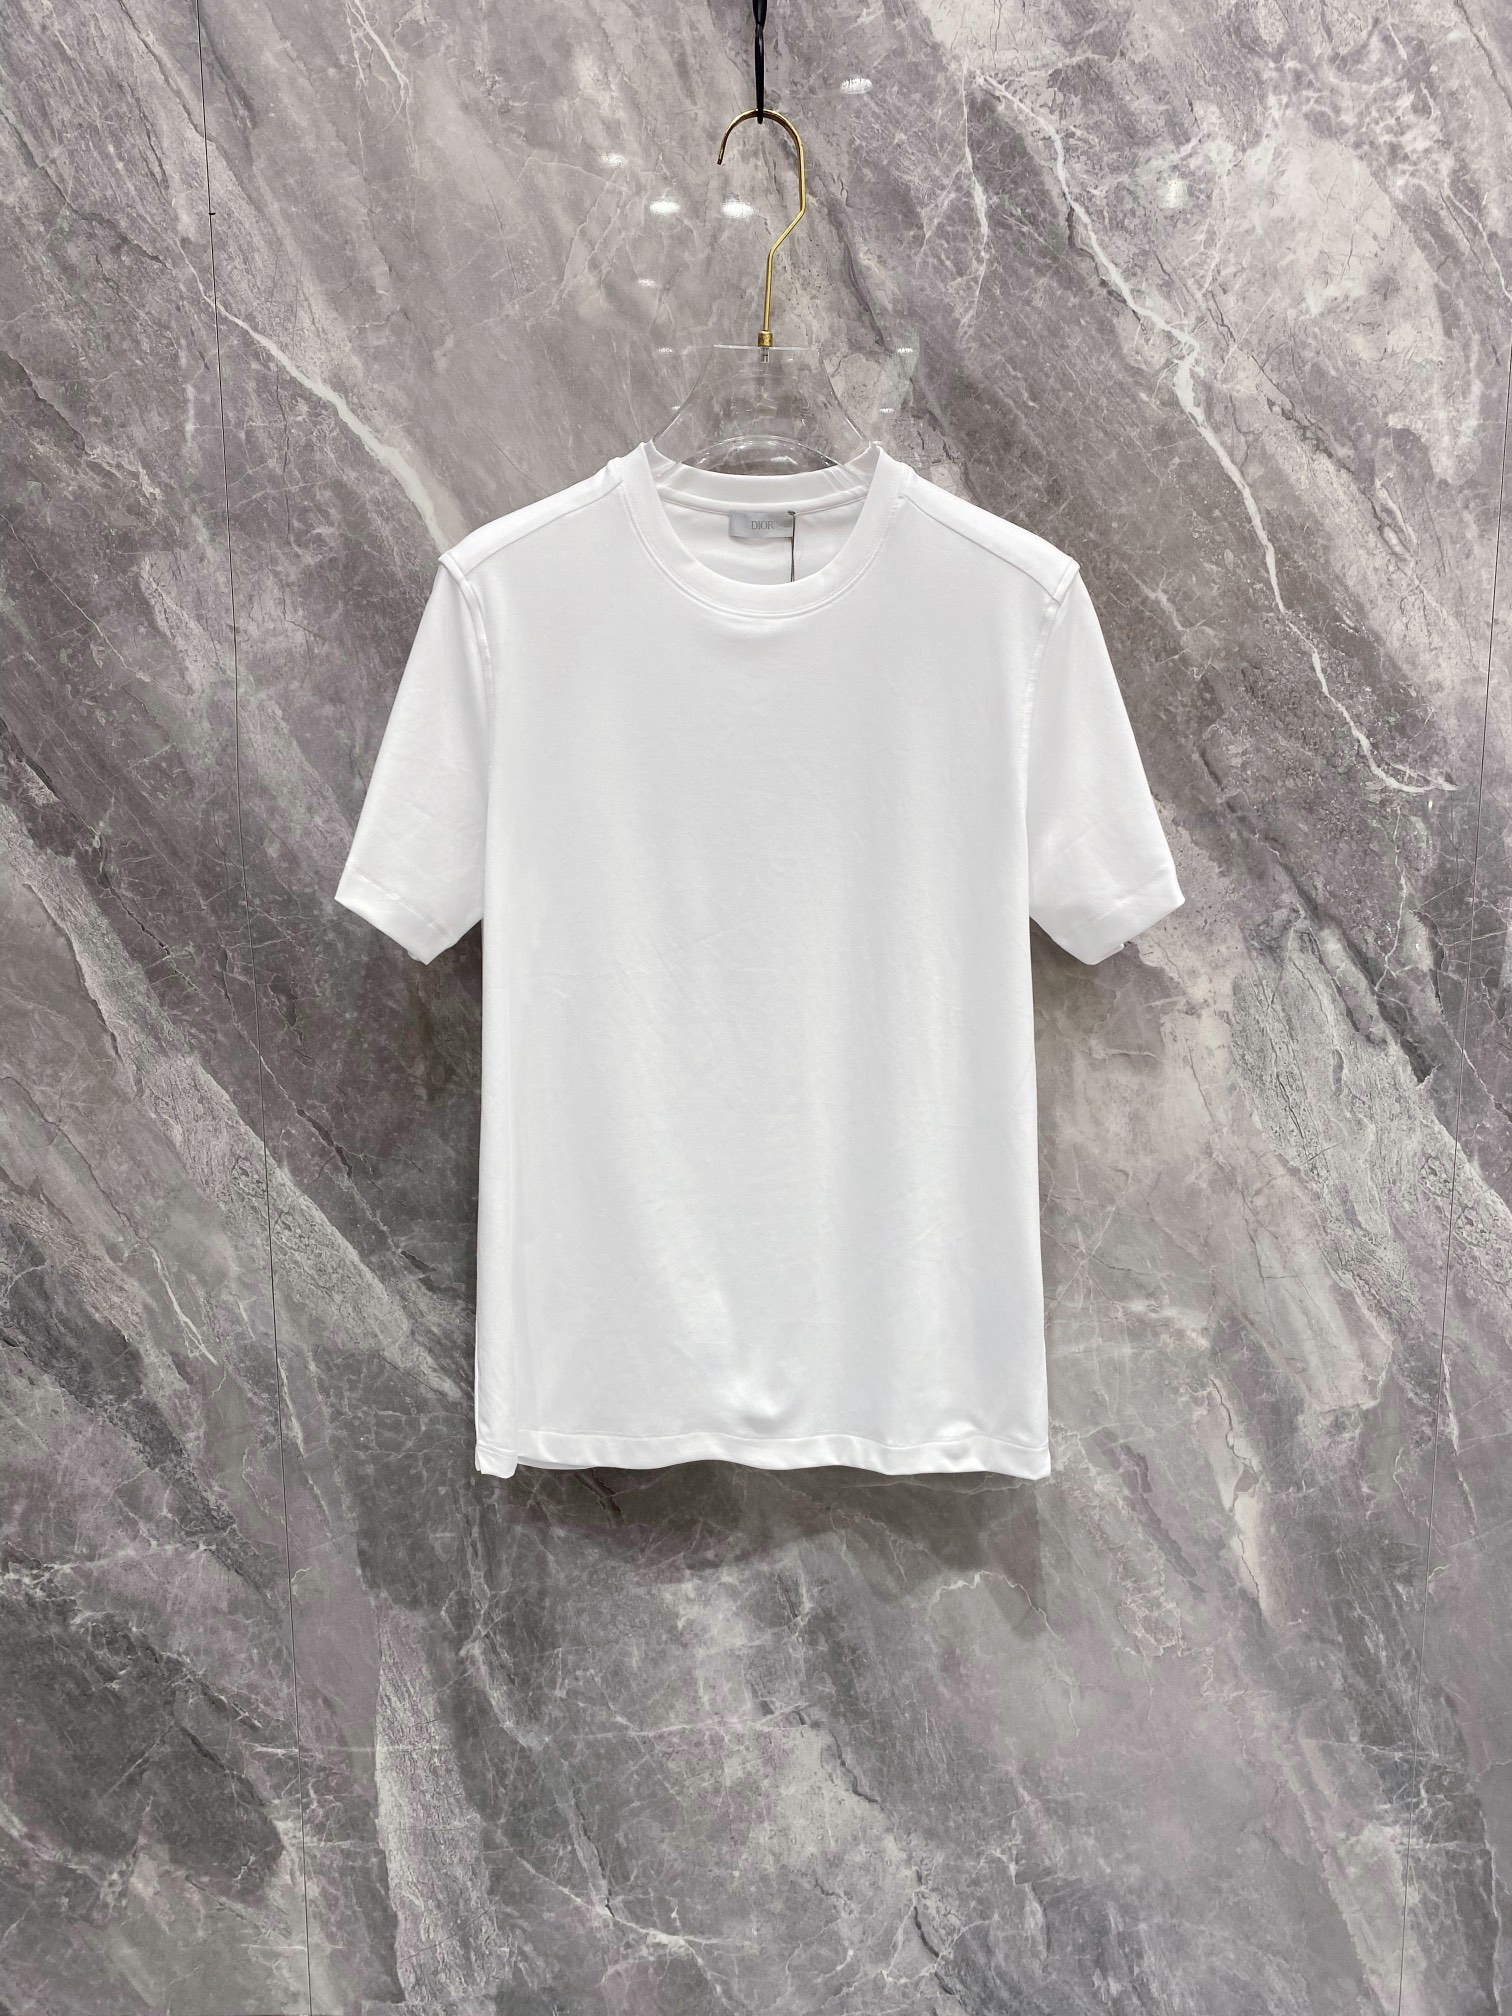 Dior Clothing T-Shirt Buy Luxury 2023
 Unisex Cotton Short Sleeve